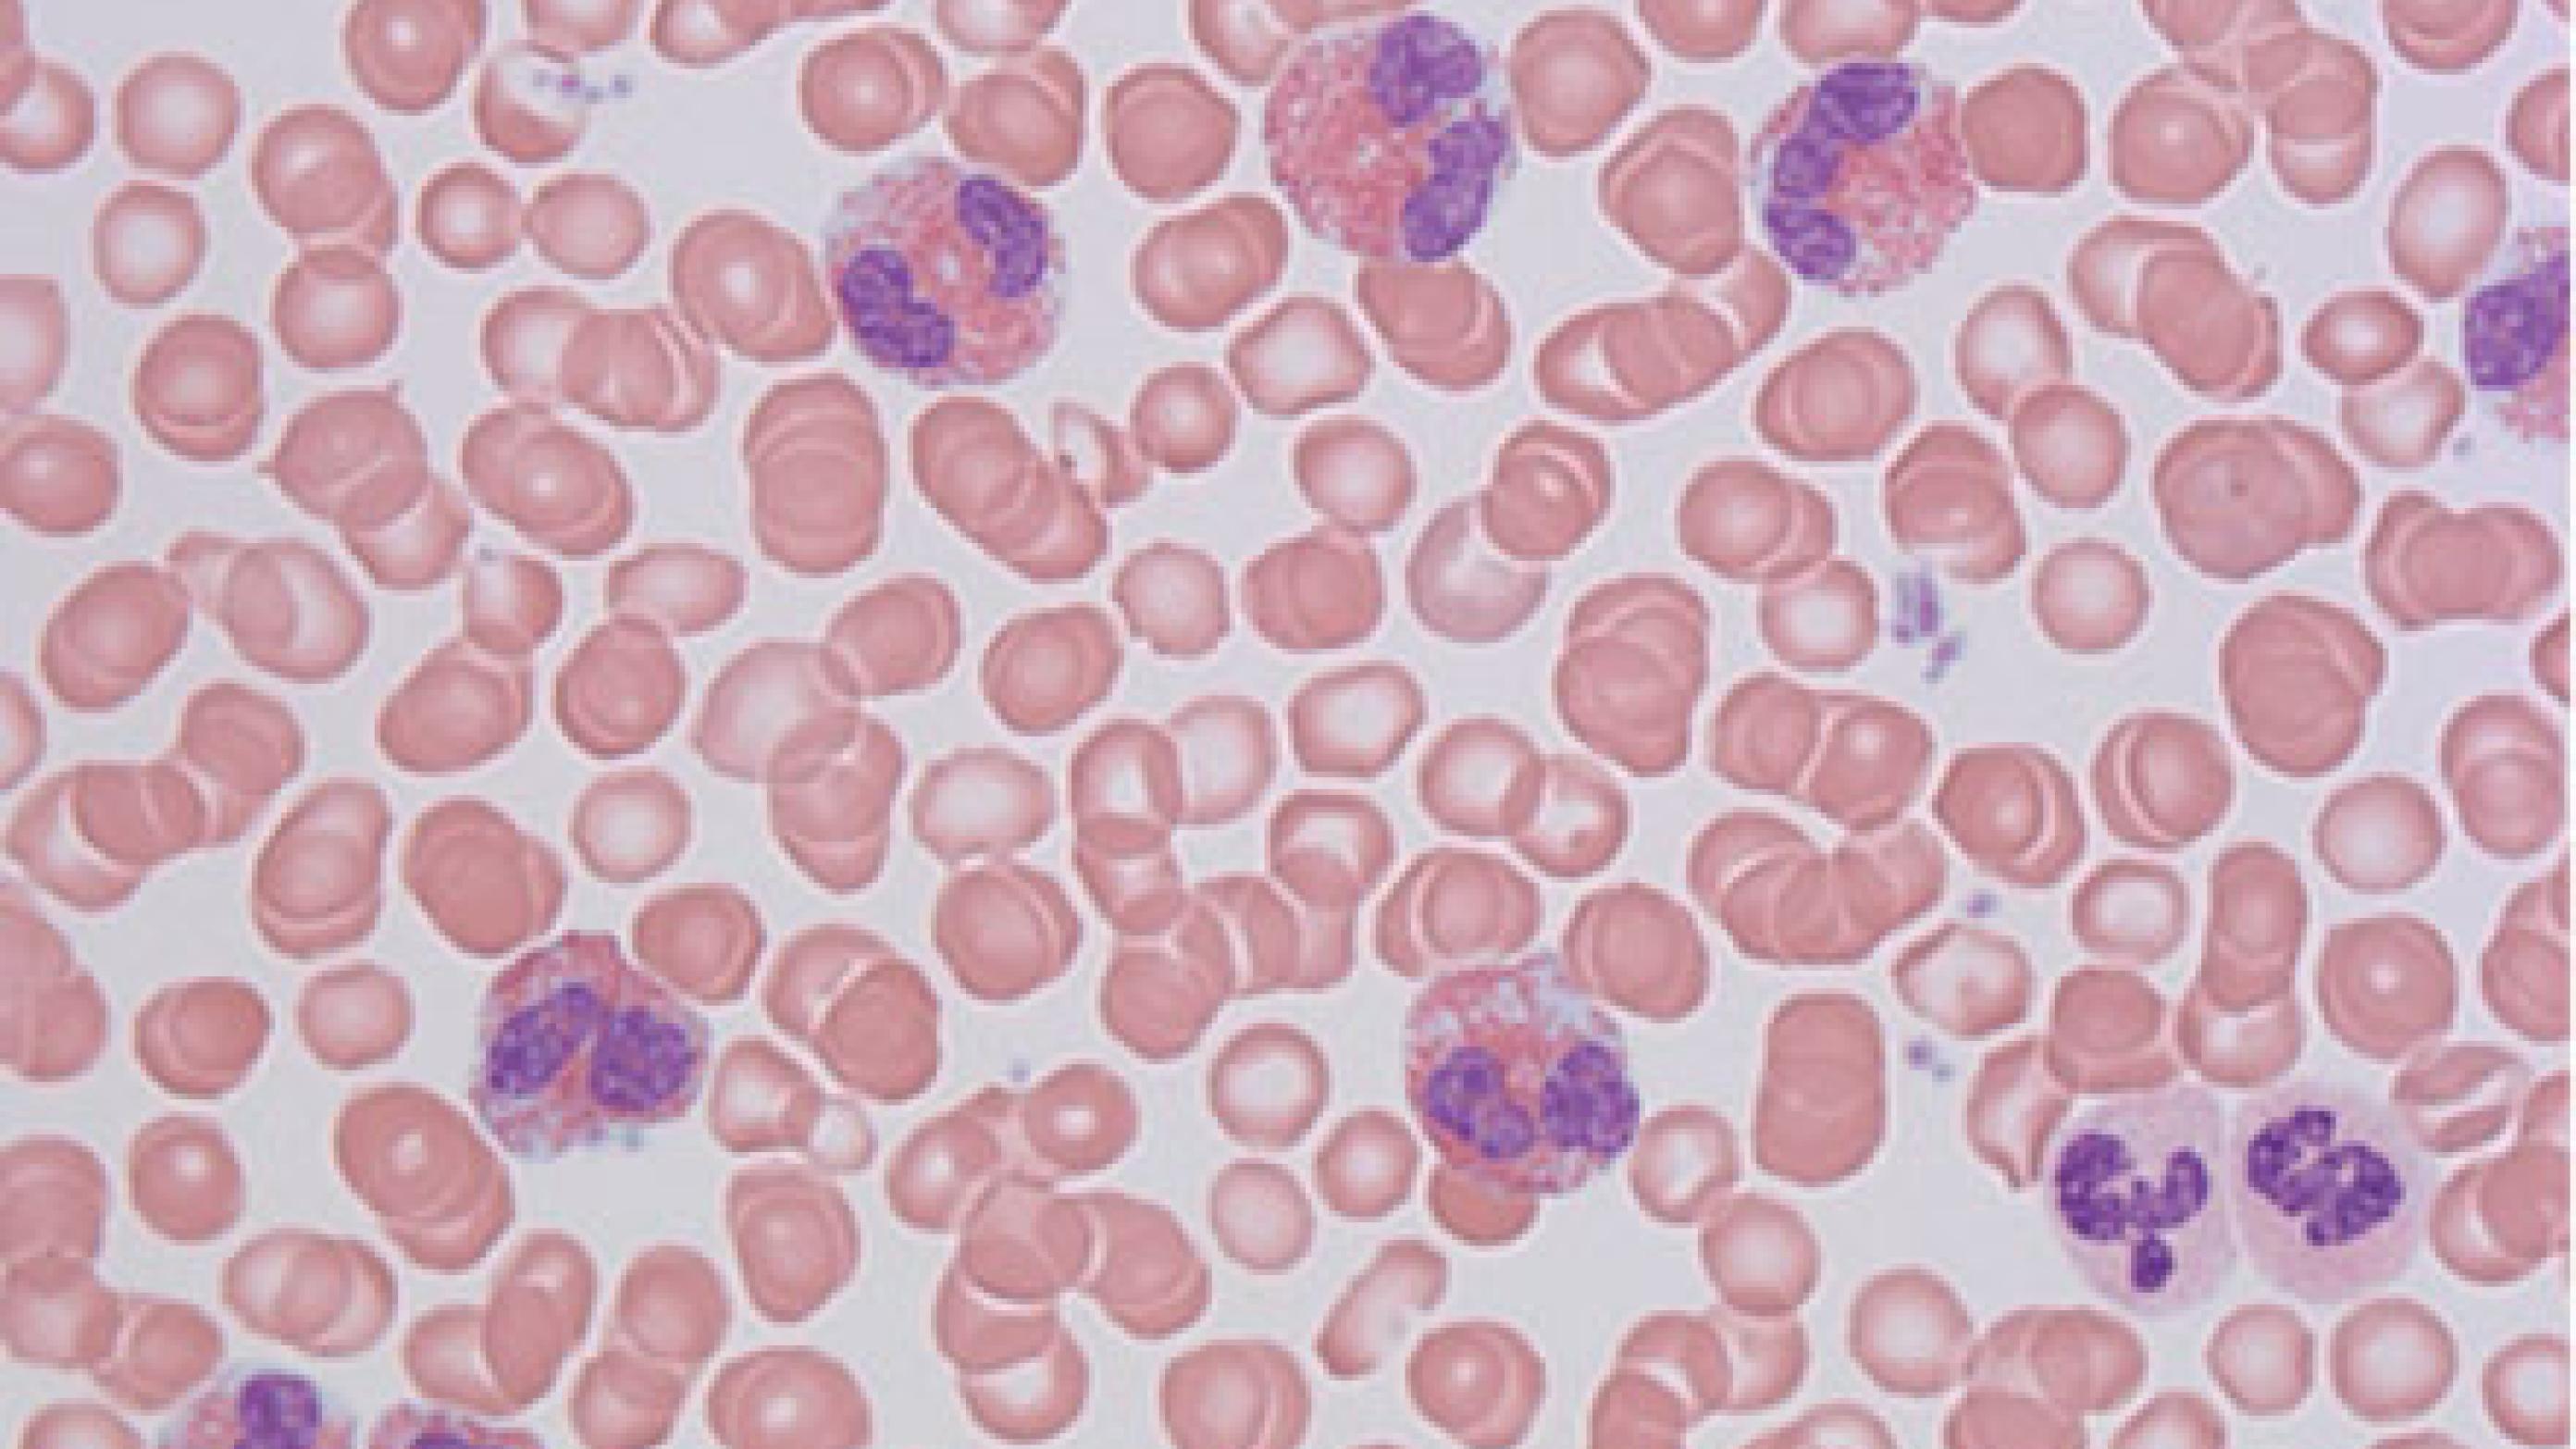 Udstryg af perifert blod fra en patient med sekundær (reaktiv) eosinofili set i lysmikroskop, ca. 200 × forstørrelse, May-Grünwald-Giemsa-farvning. Der ses otte eosinofile granulocytter, karakteristisk med bilobær kerne og kraftigt røde granula. 